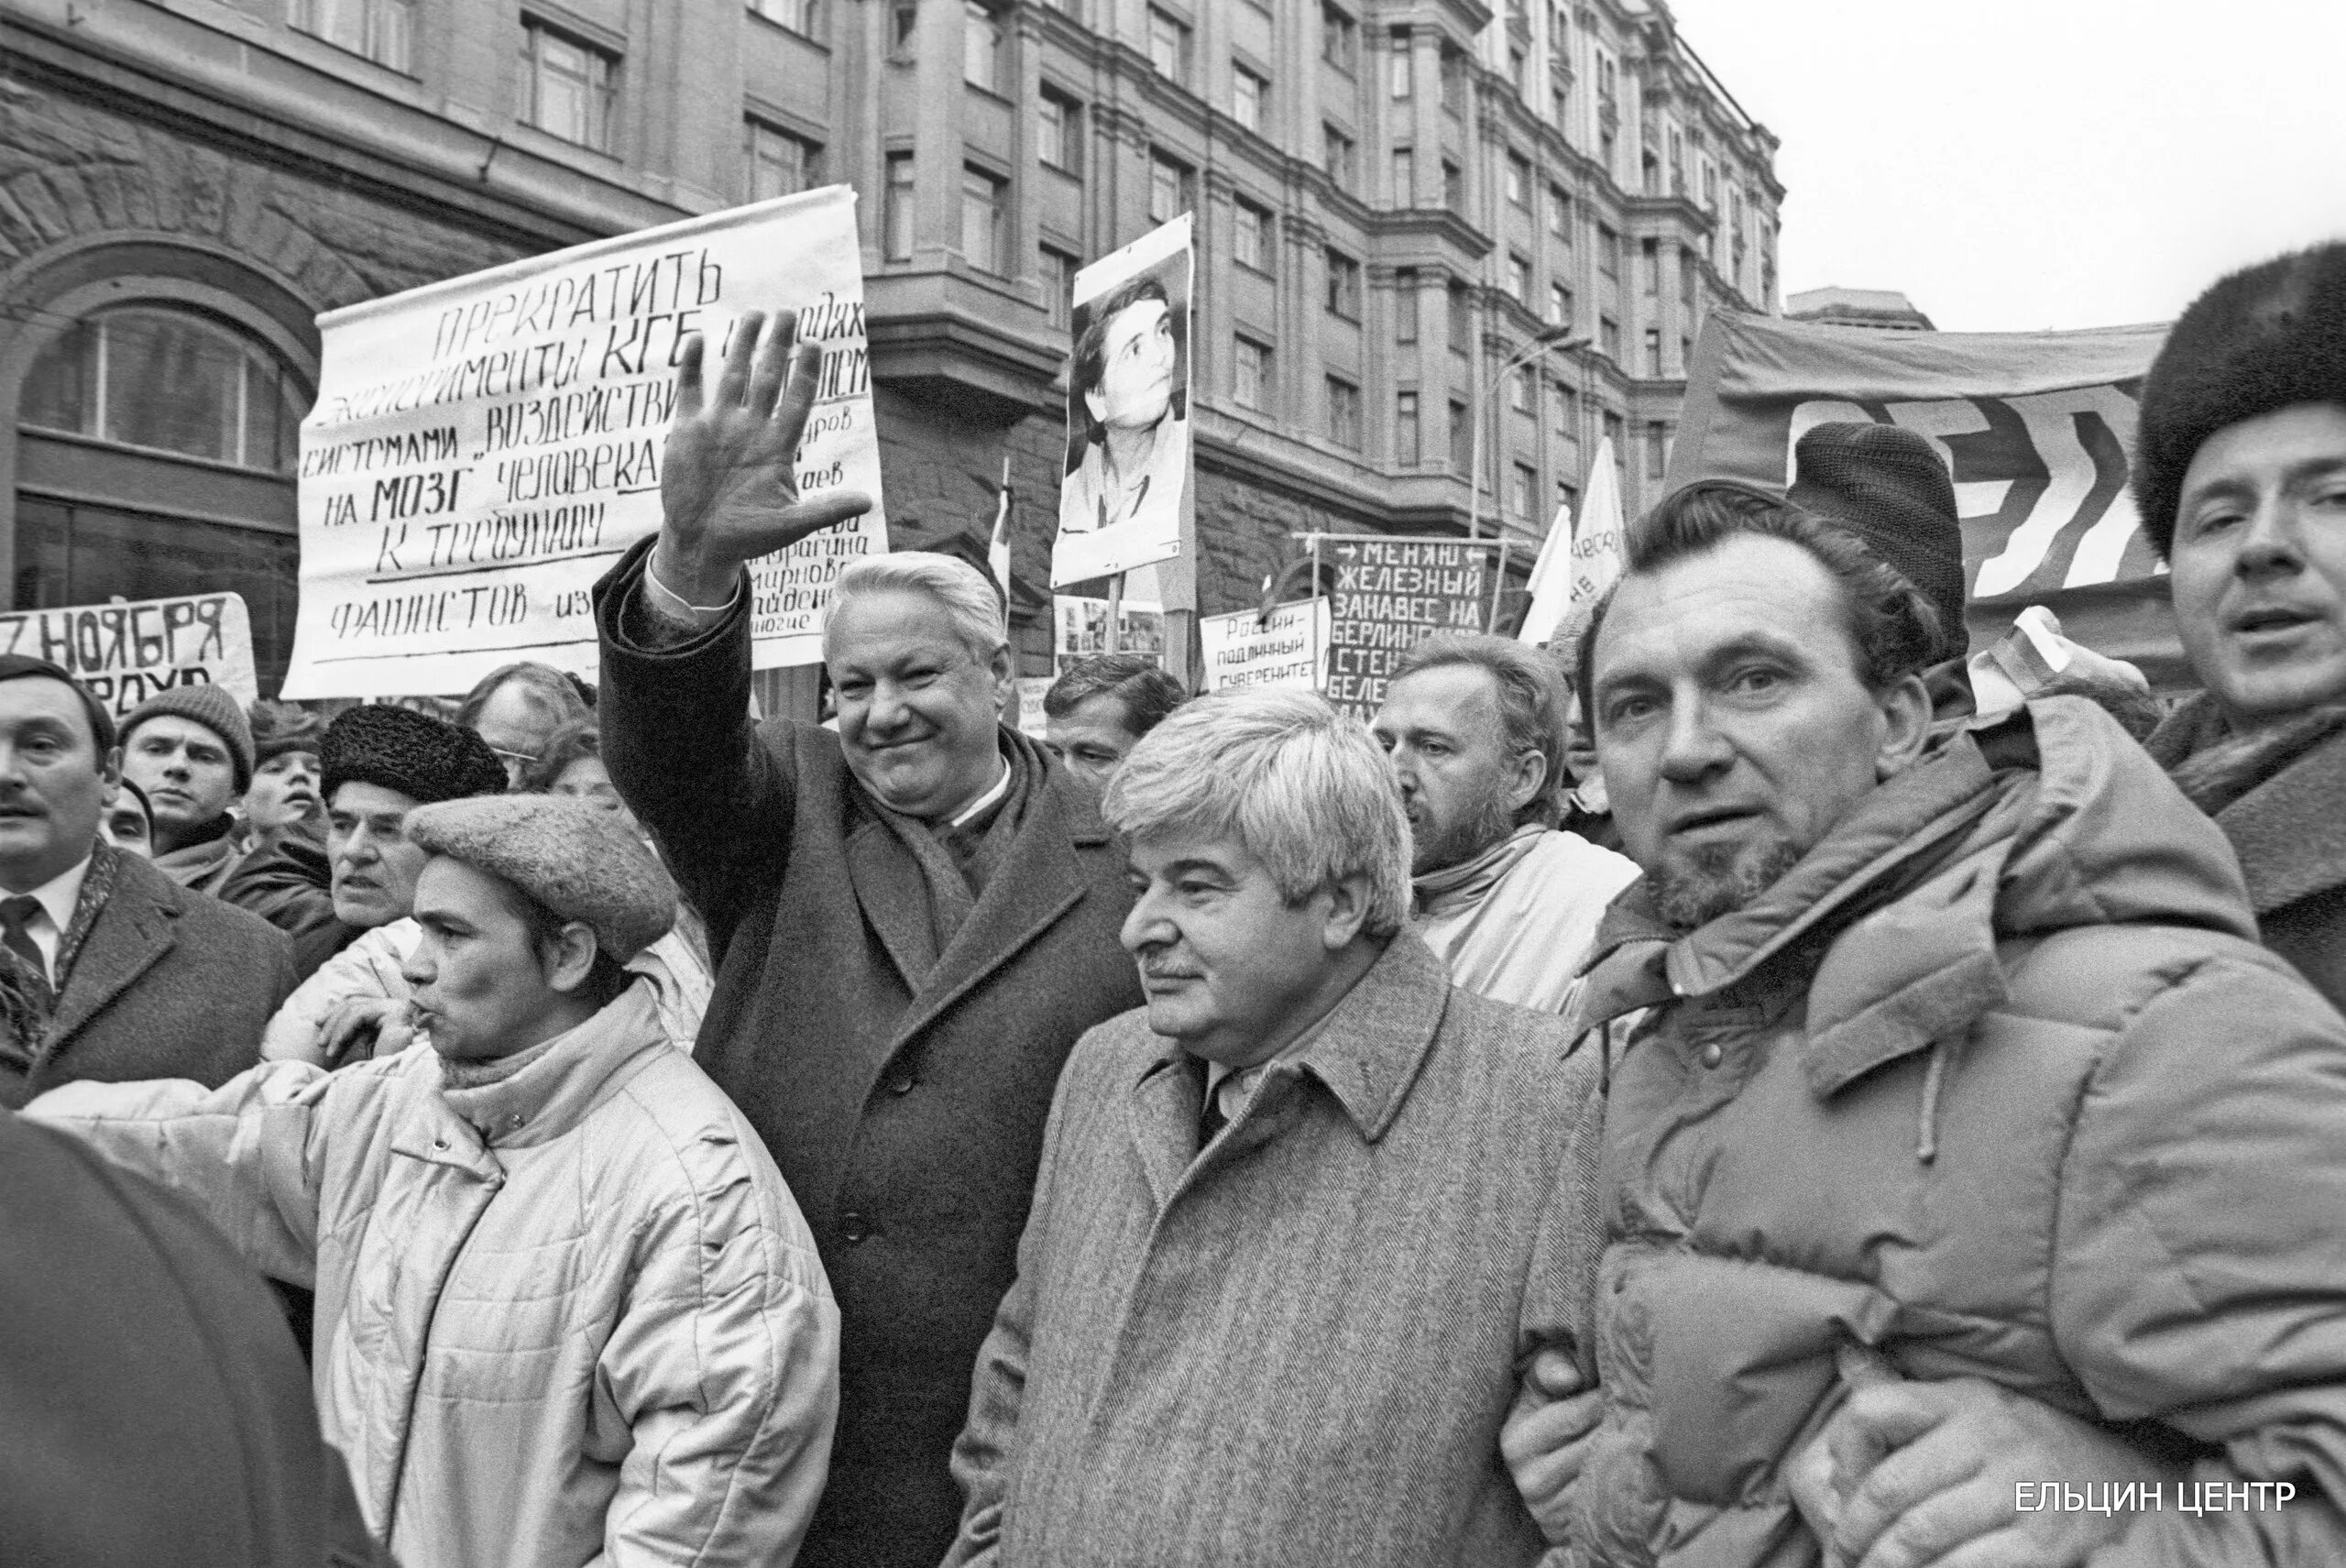 Ельцин в 1990 году. Ельцин митинг 1990. Россия в 90-е Ельцин. Перестройка в России 1990.